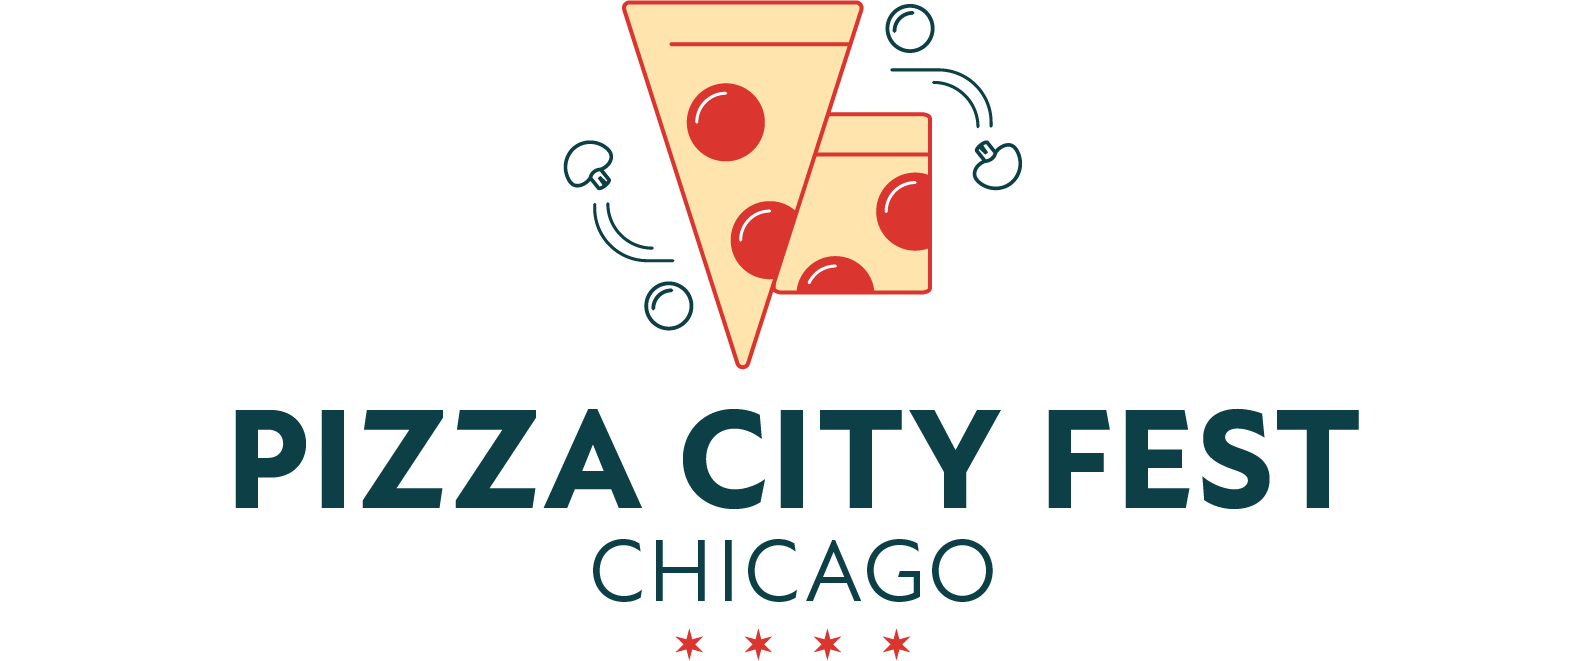 Chicago pizza fest logo